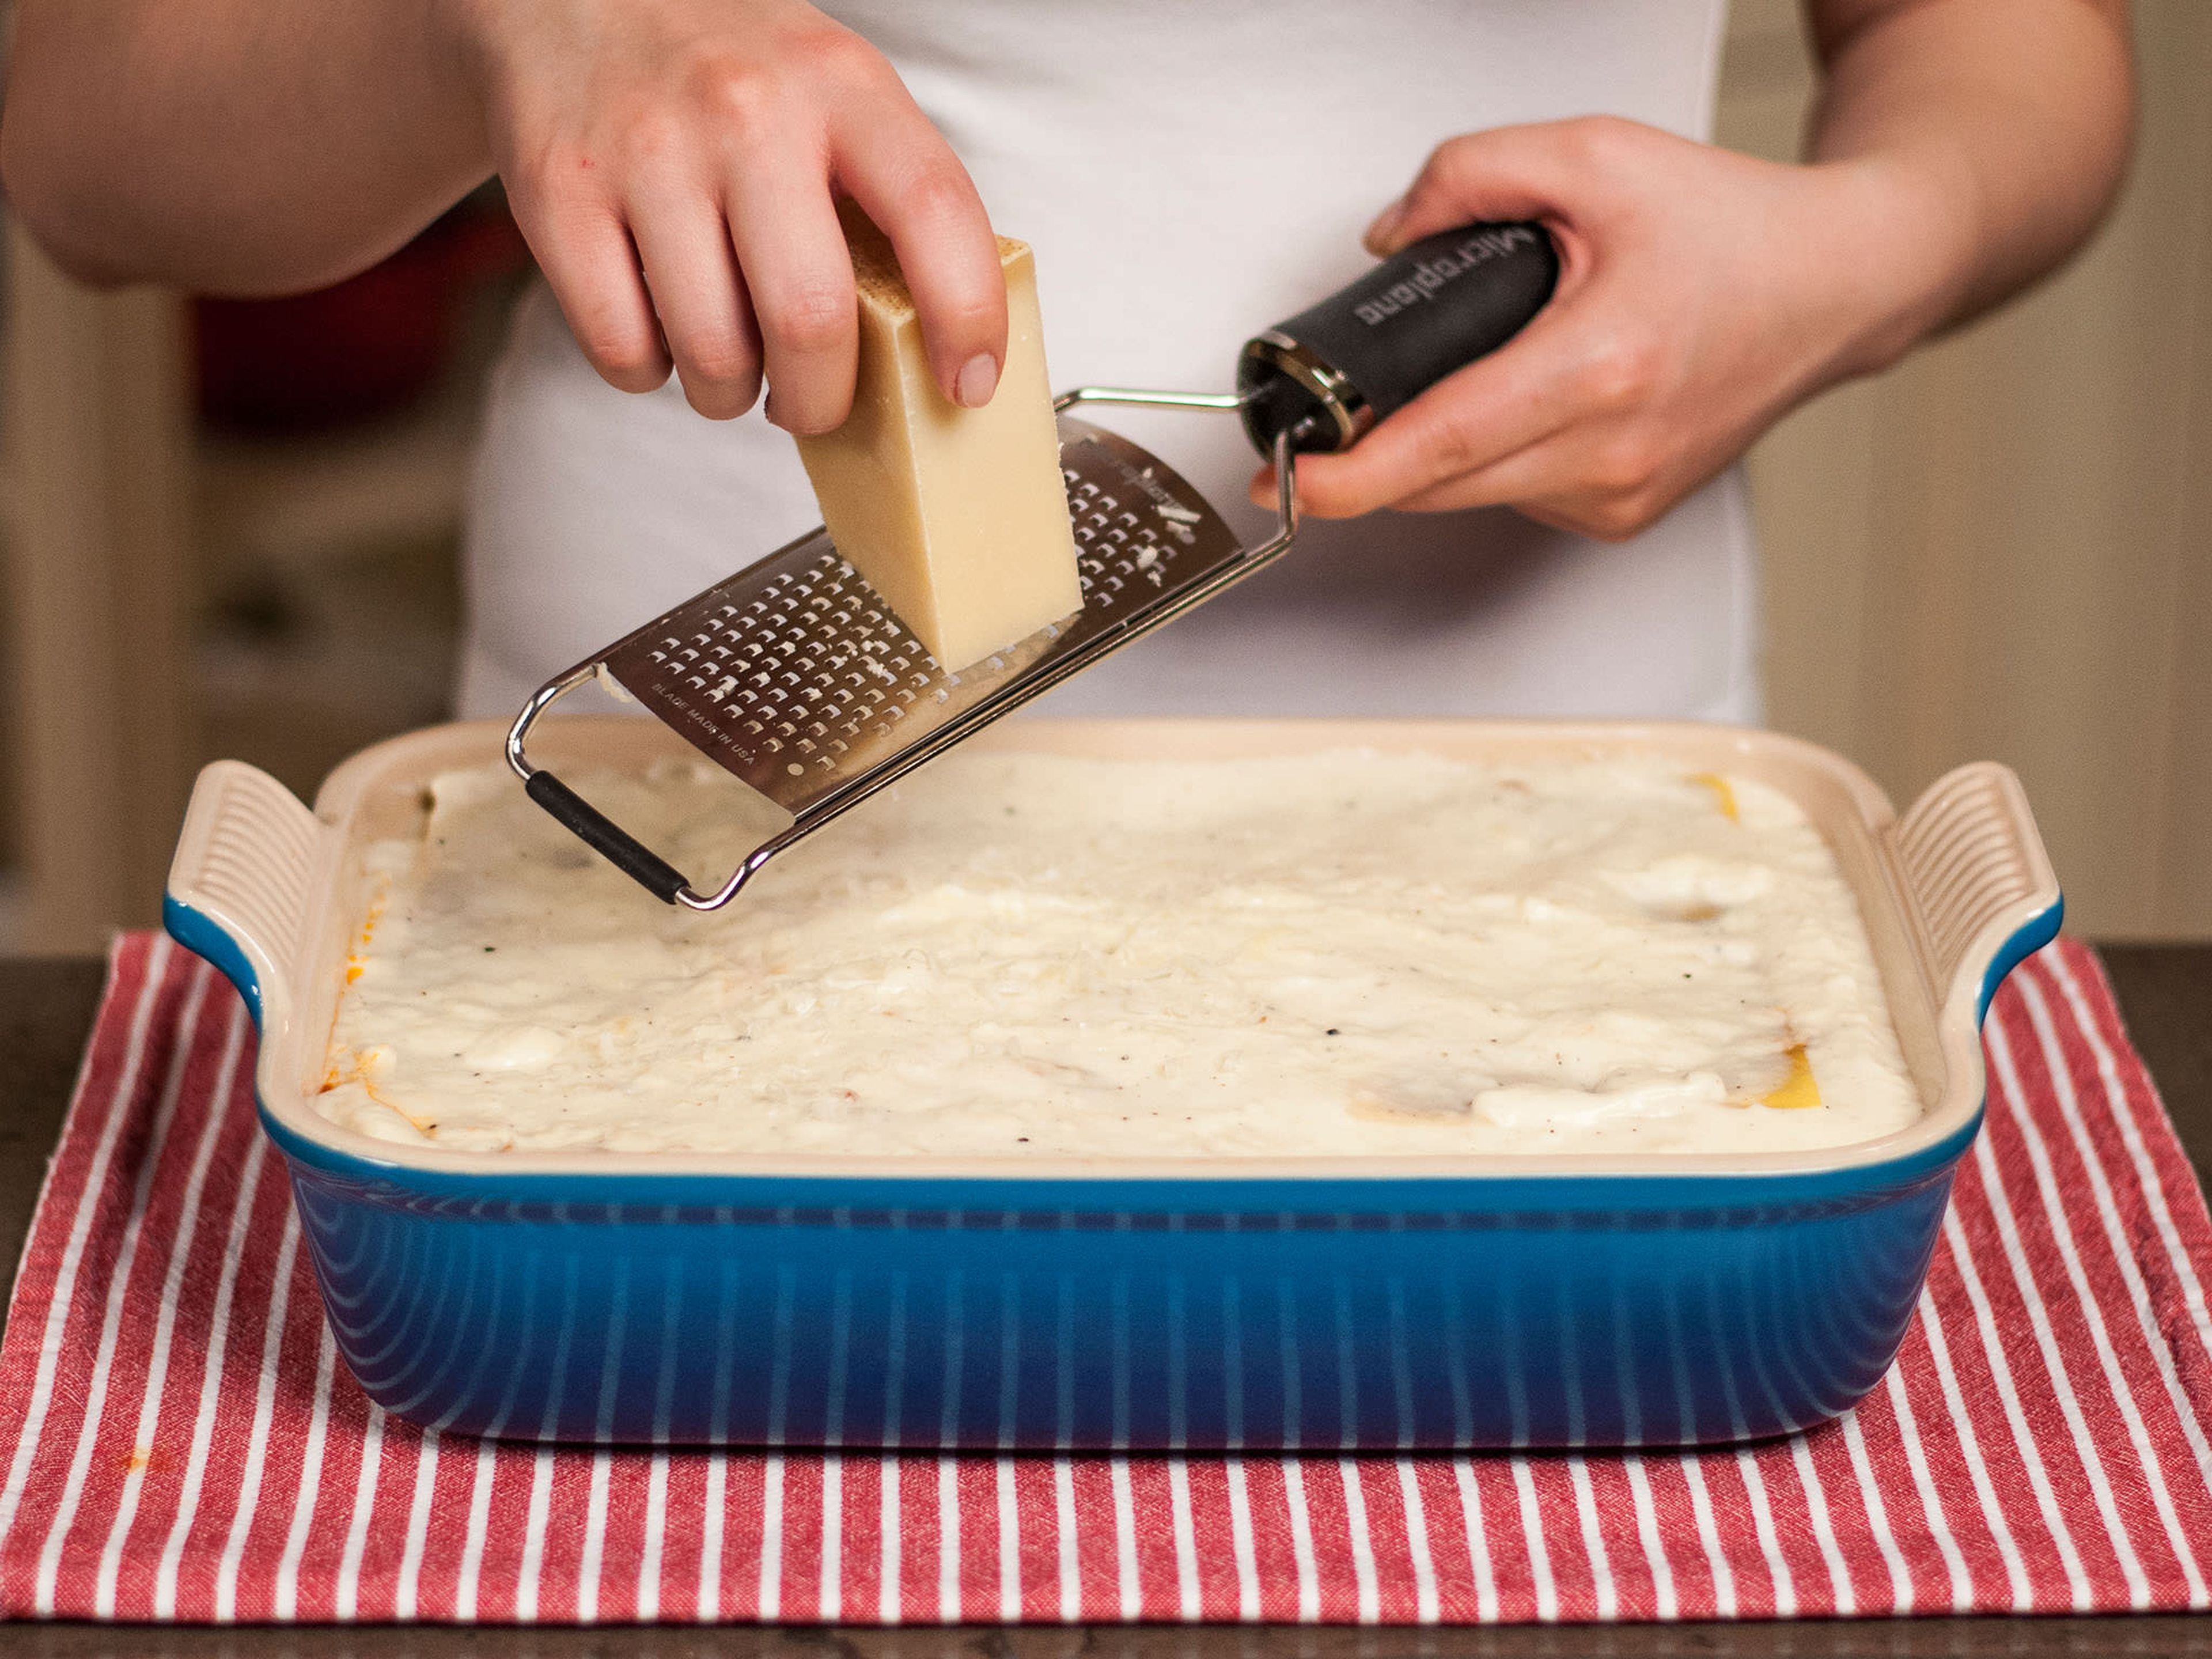 Den Parmesan über die letzte Schicht reiben und die Lasagne in einem vorgeheizten Ofen bei 200°C/390°F auf der mittleren Schiene für etwa 30-40 Min. backen, oder bis die Oberseite golden ist. In der heißen Auflaufform servieren. Guten Appetit!